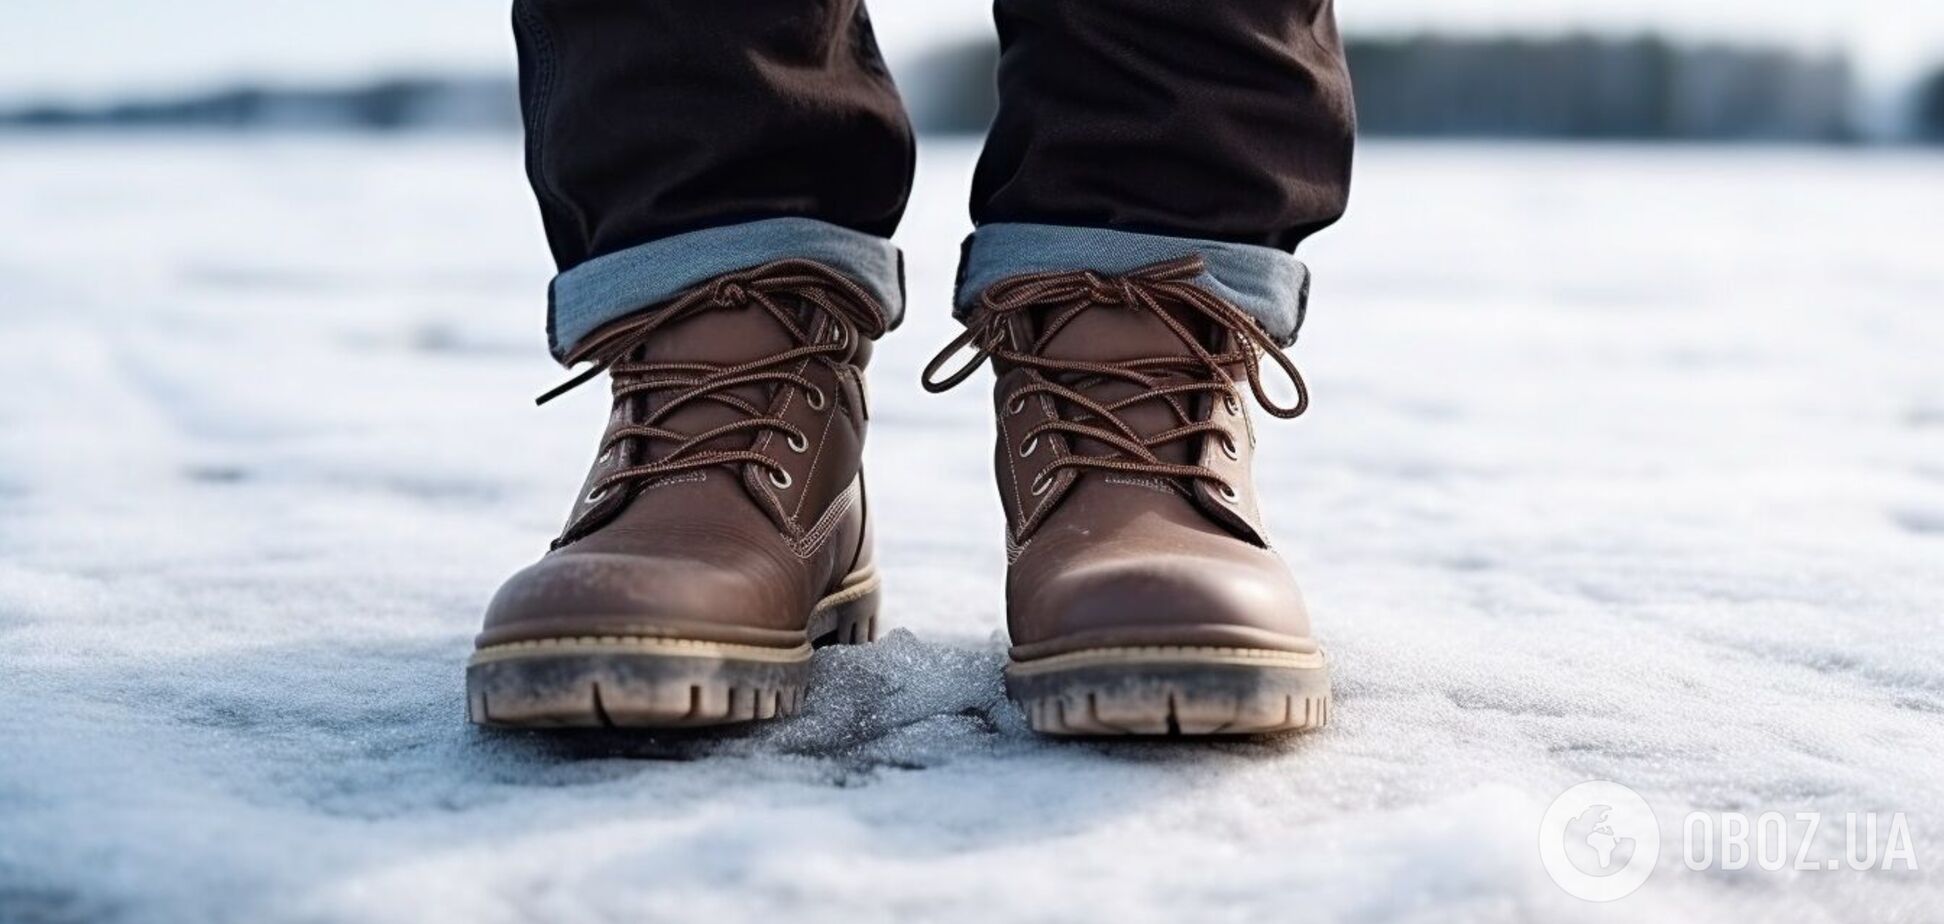 Як підготувати взуття до зими, щоб не було слизьким: лайфхаки